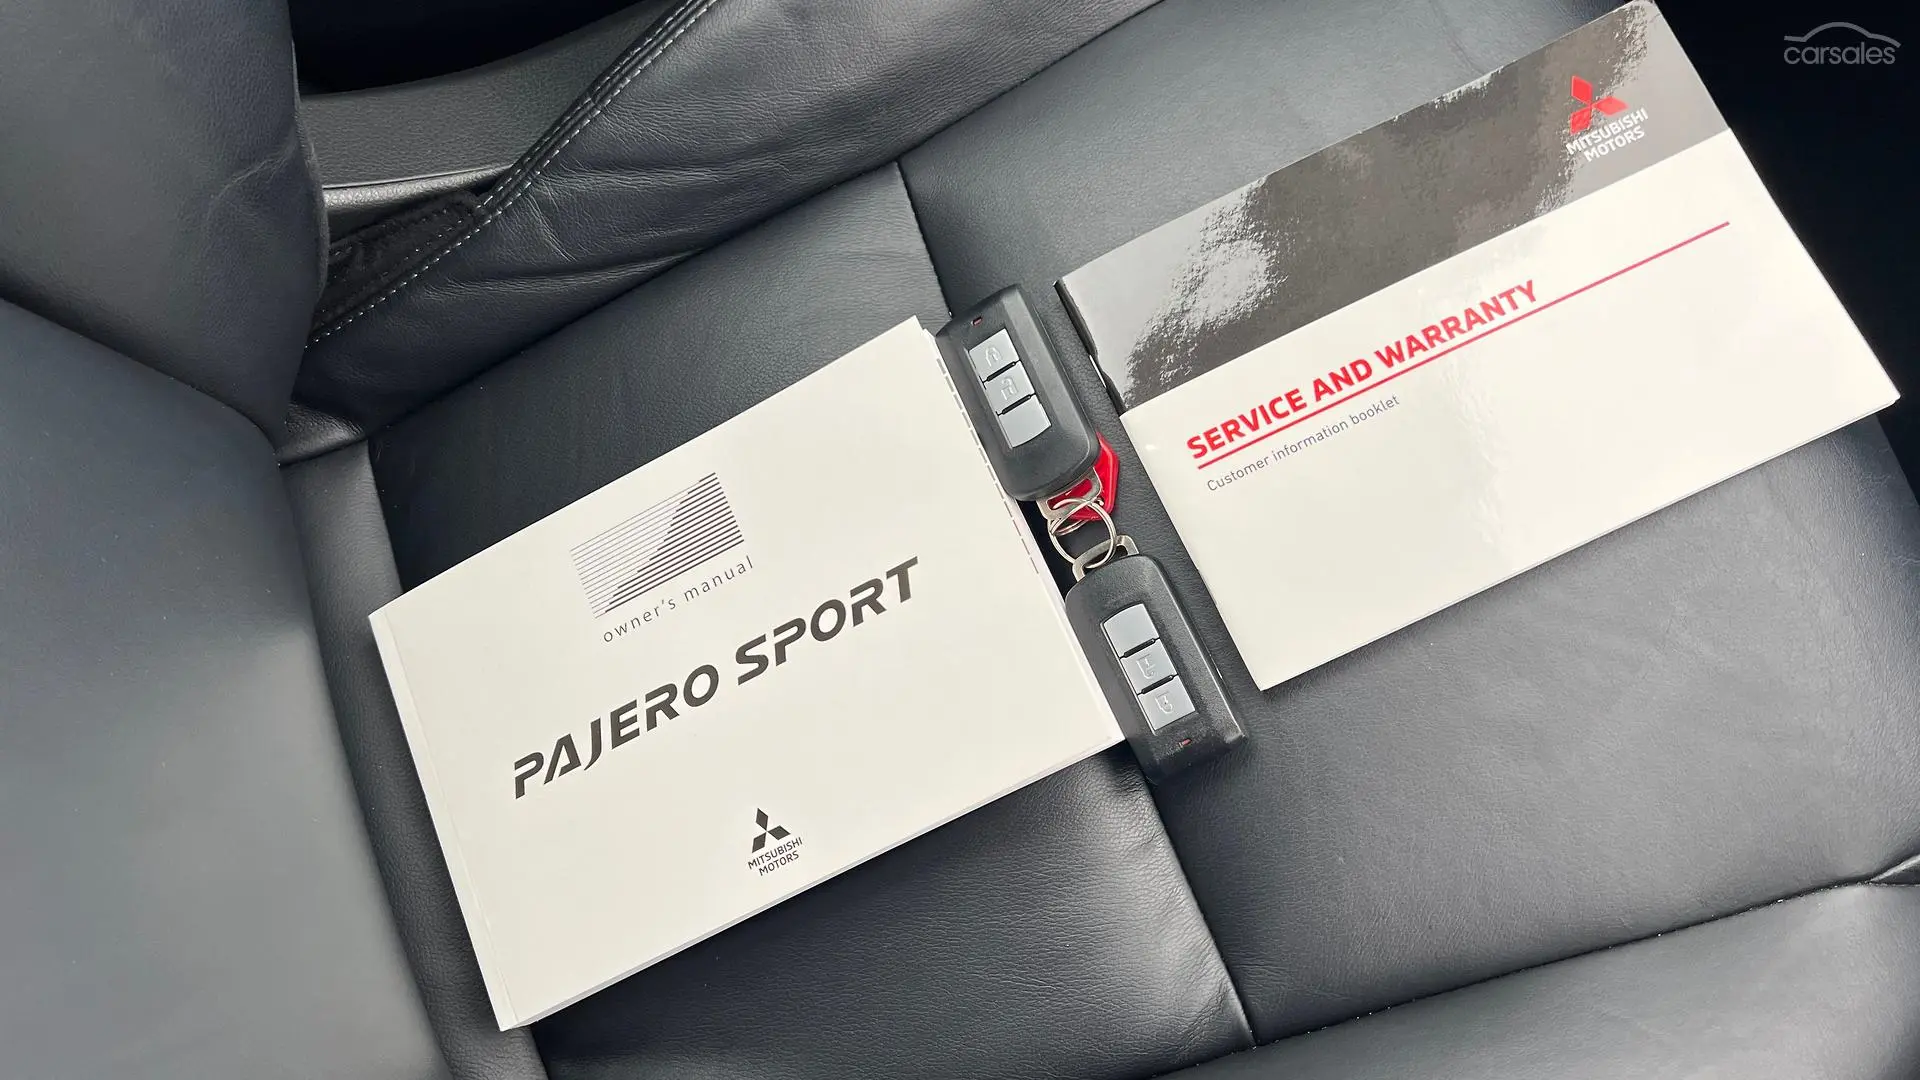 2019 Mitsubishi Pajero Sport Image 24